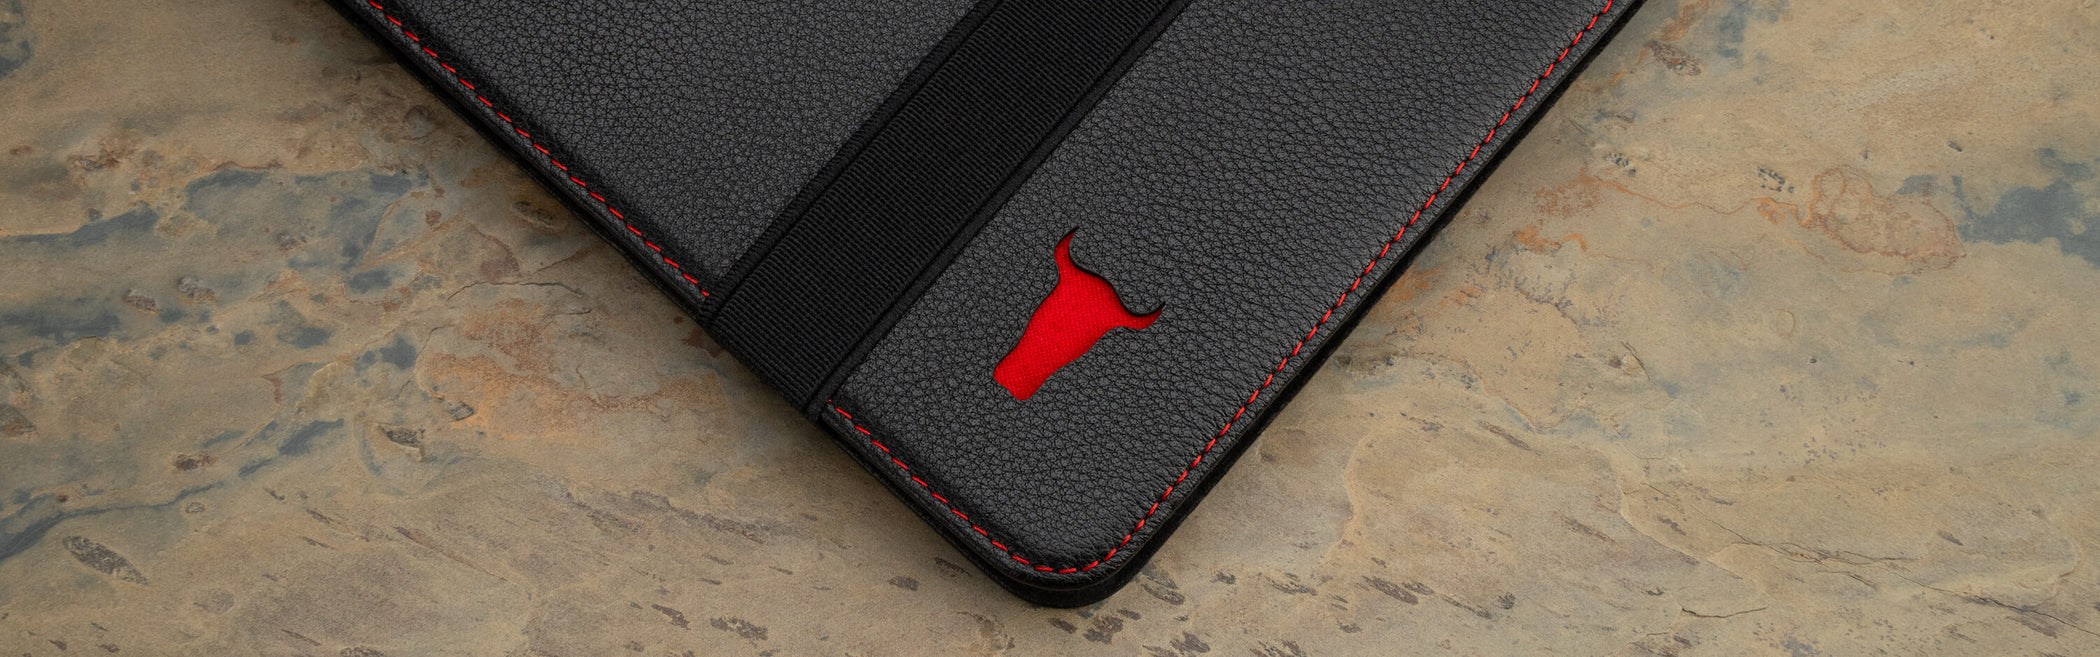 iPad Pro Leather Cases